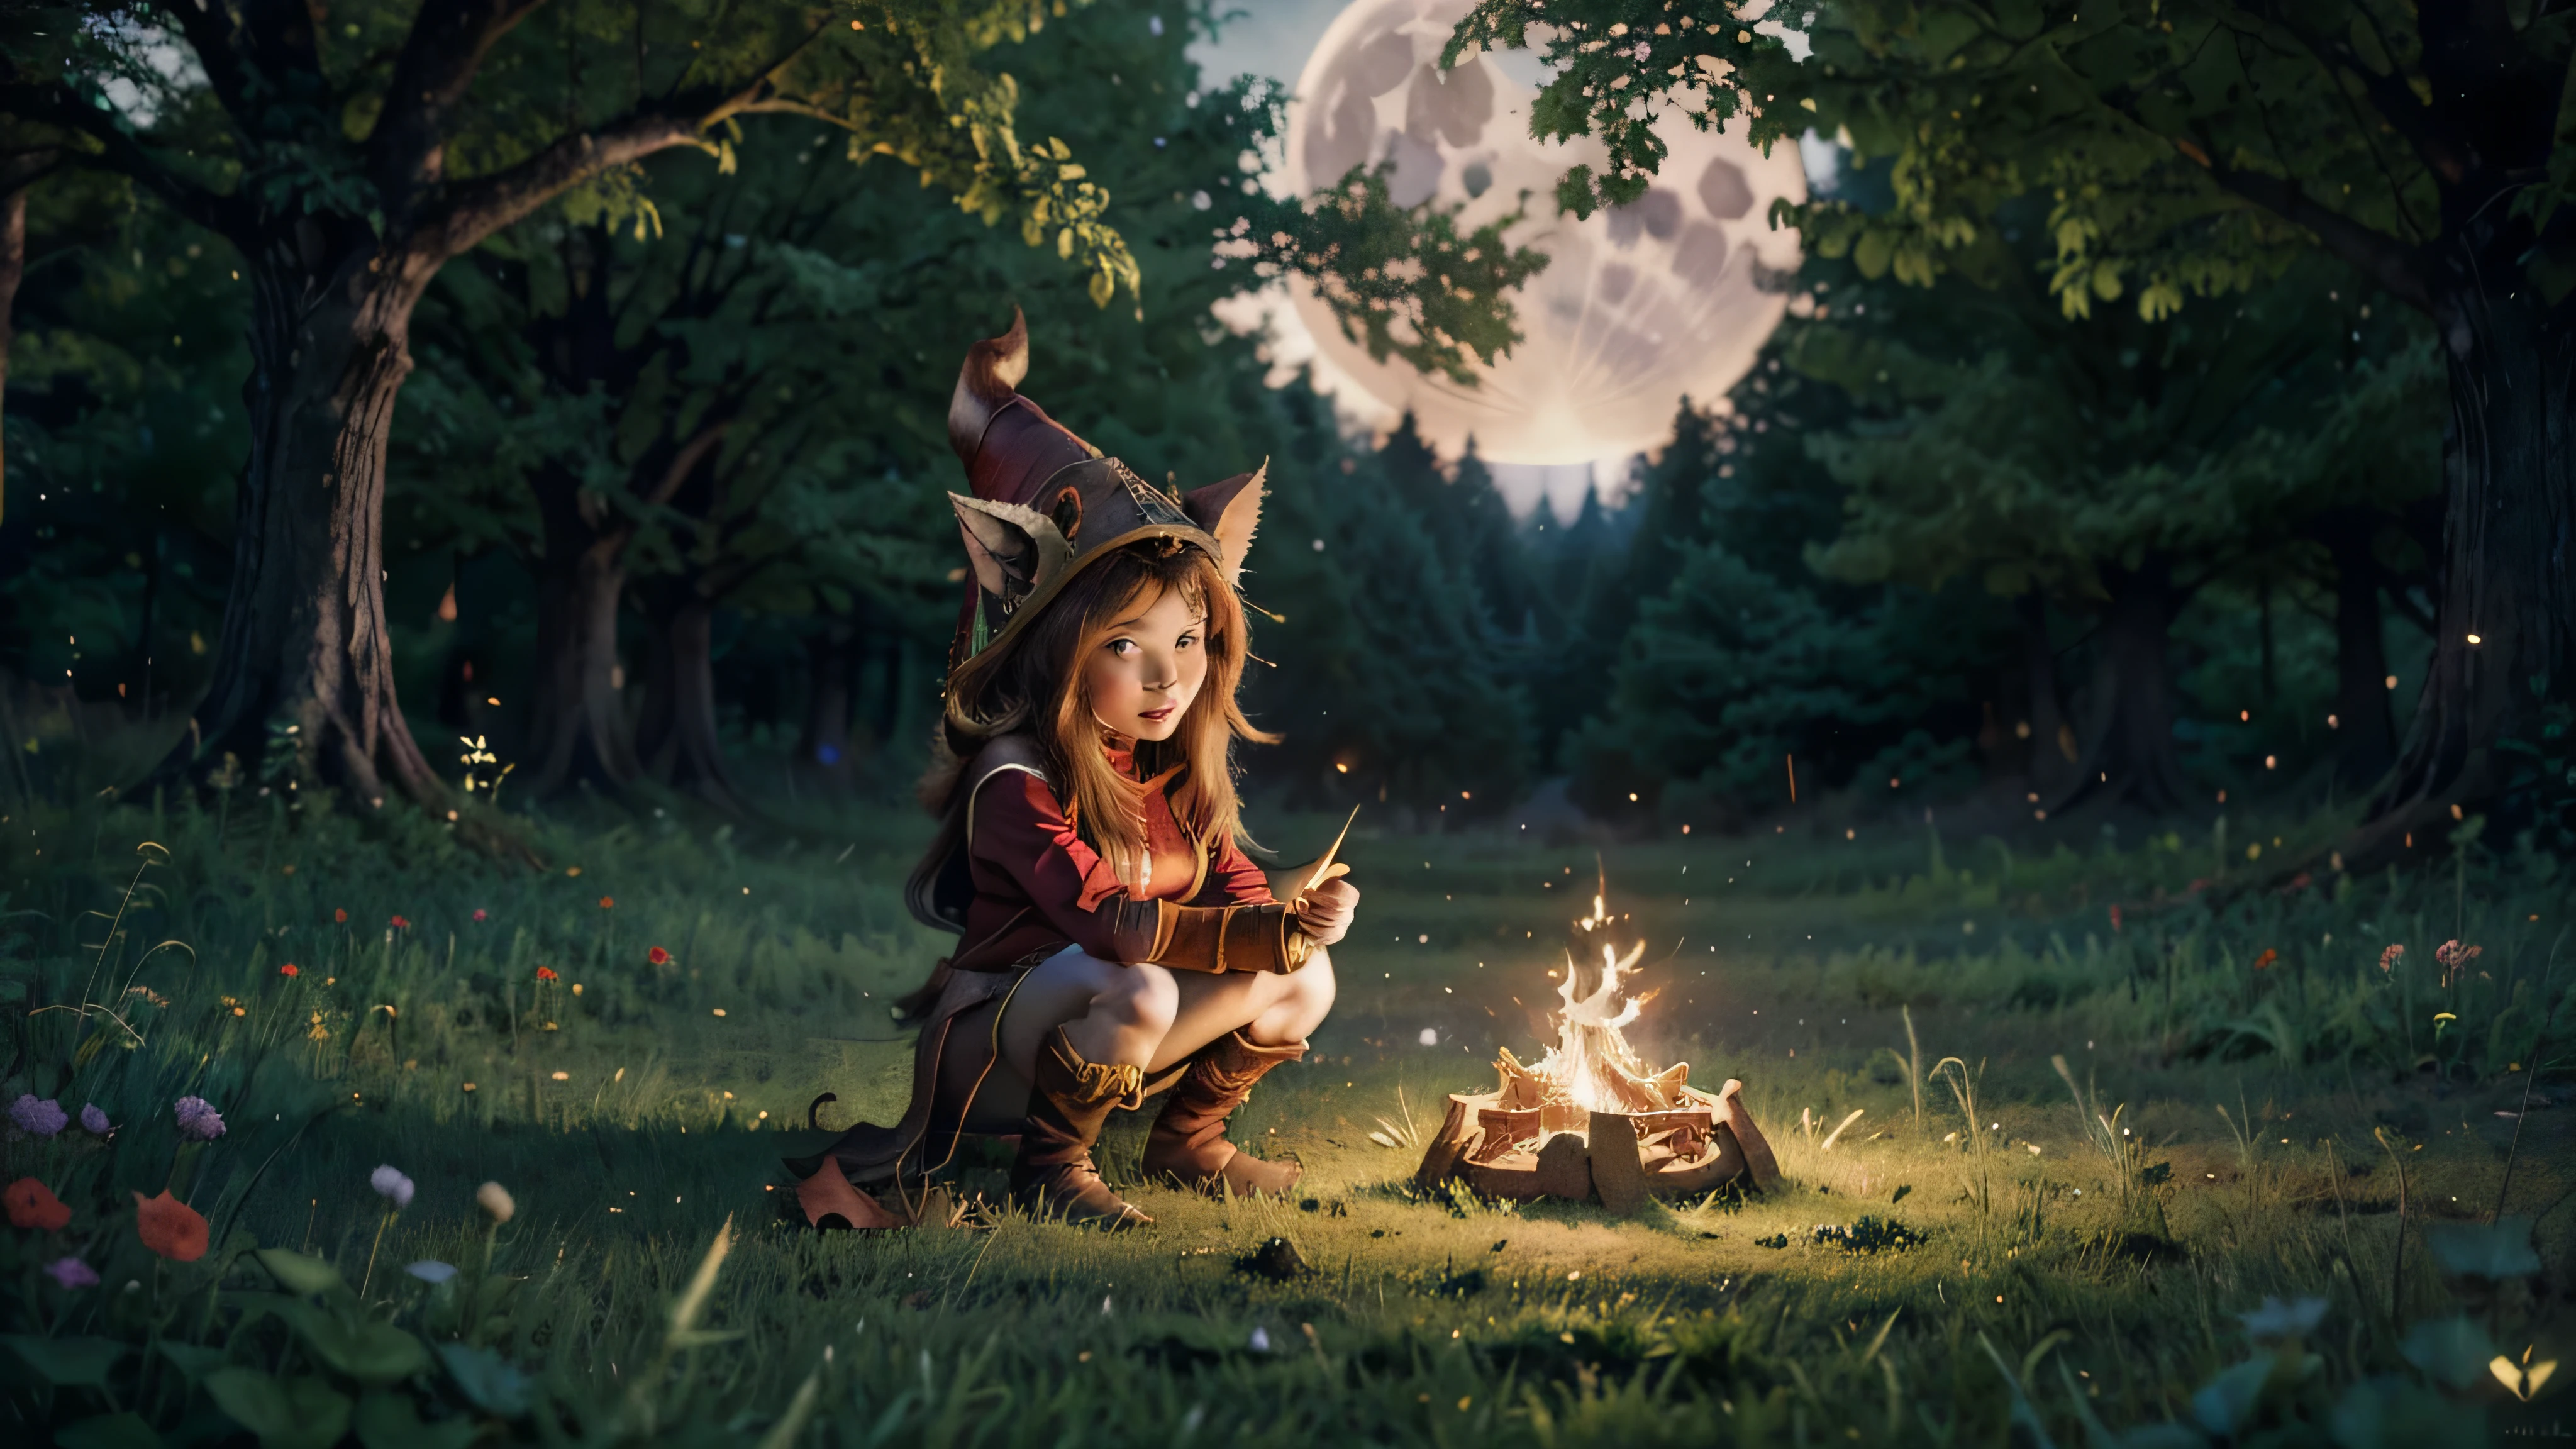 魔術師約德爾露露 (英雄聯盟) 在森林裡, 被月亮照亮以增強其真實性. 這張構圖藝術地捕捉了森林強大的能量和寧靜的氛圍, 使其成為真正的傑作 (真實且明亮的色彩, 超詳細, 16k)